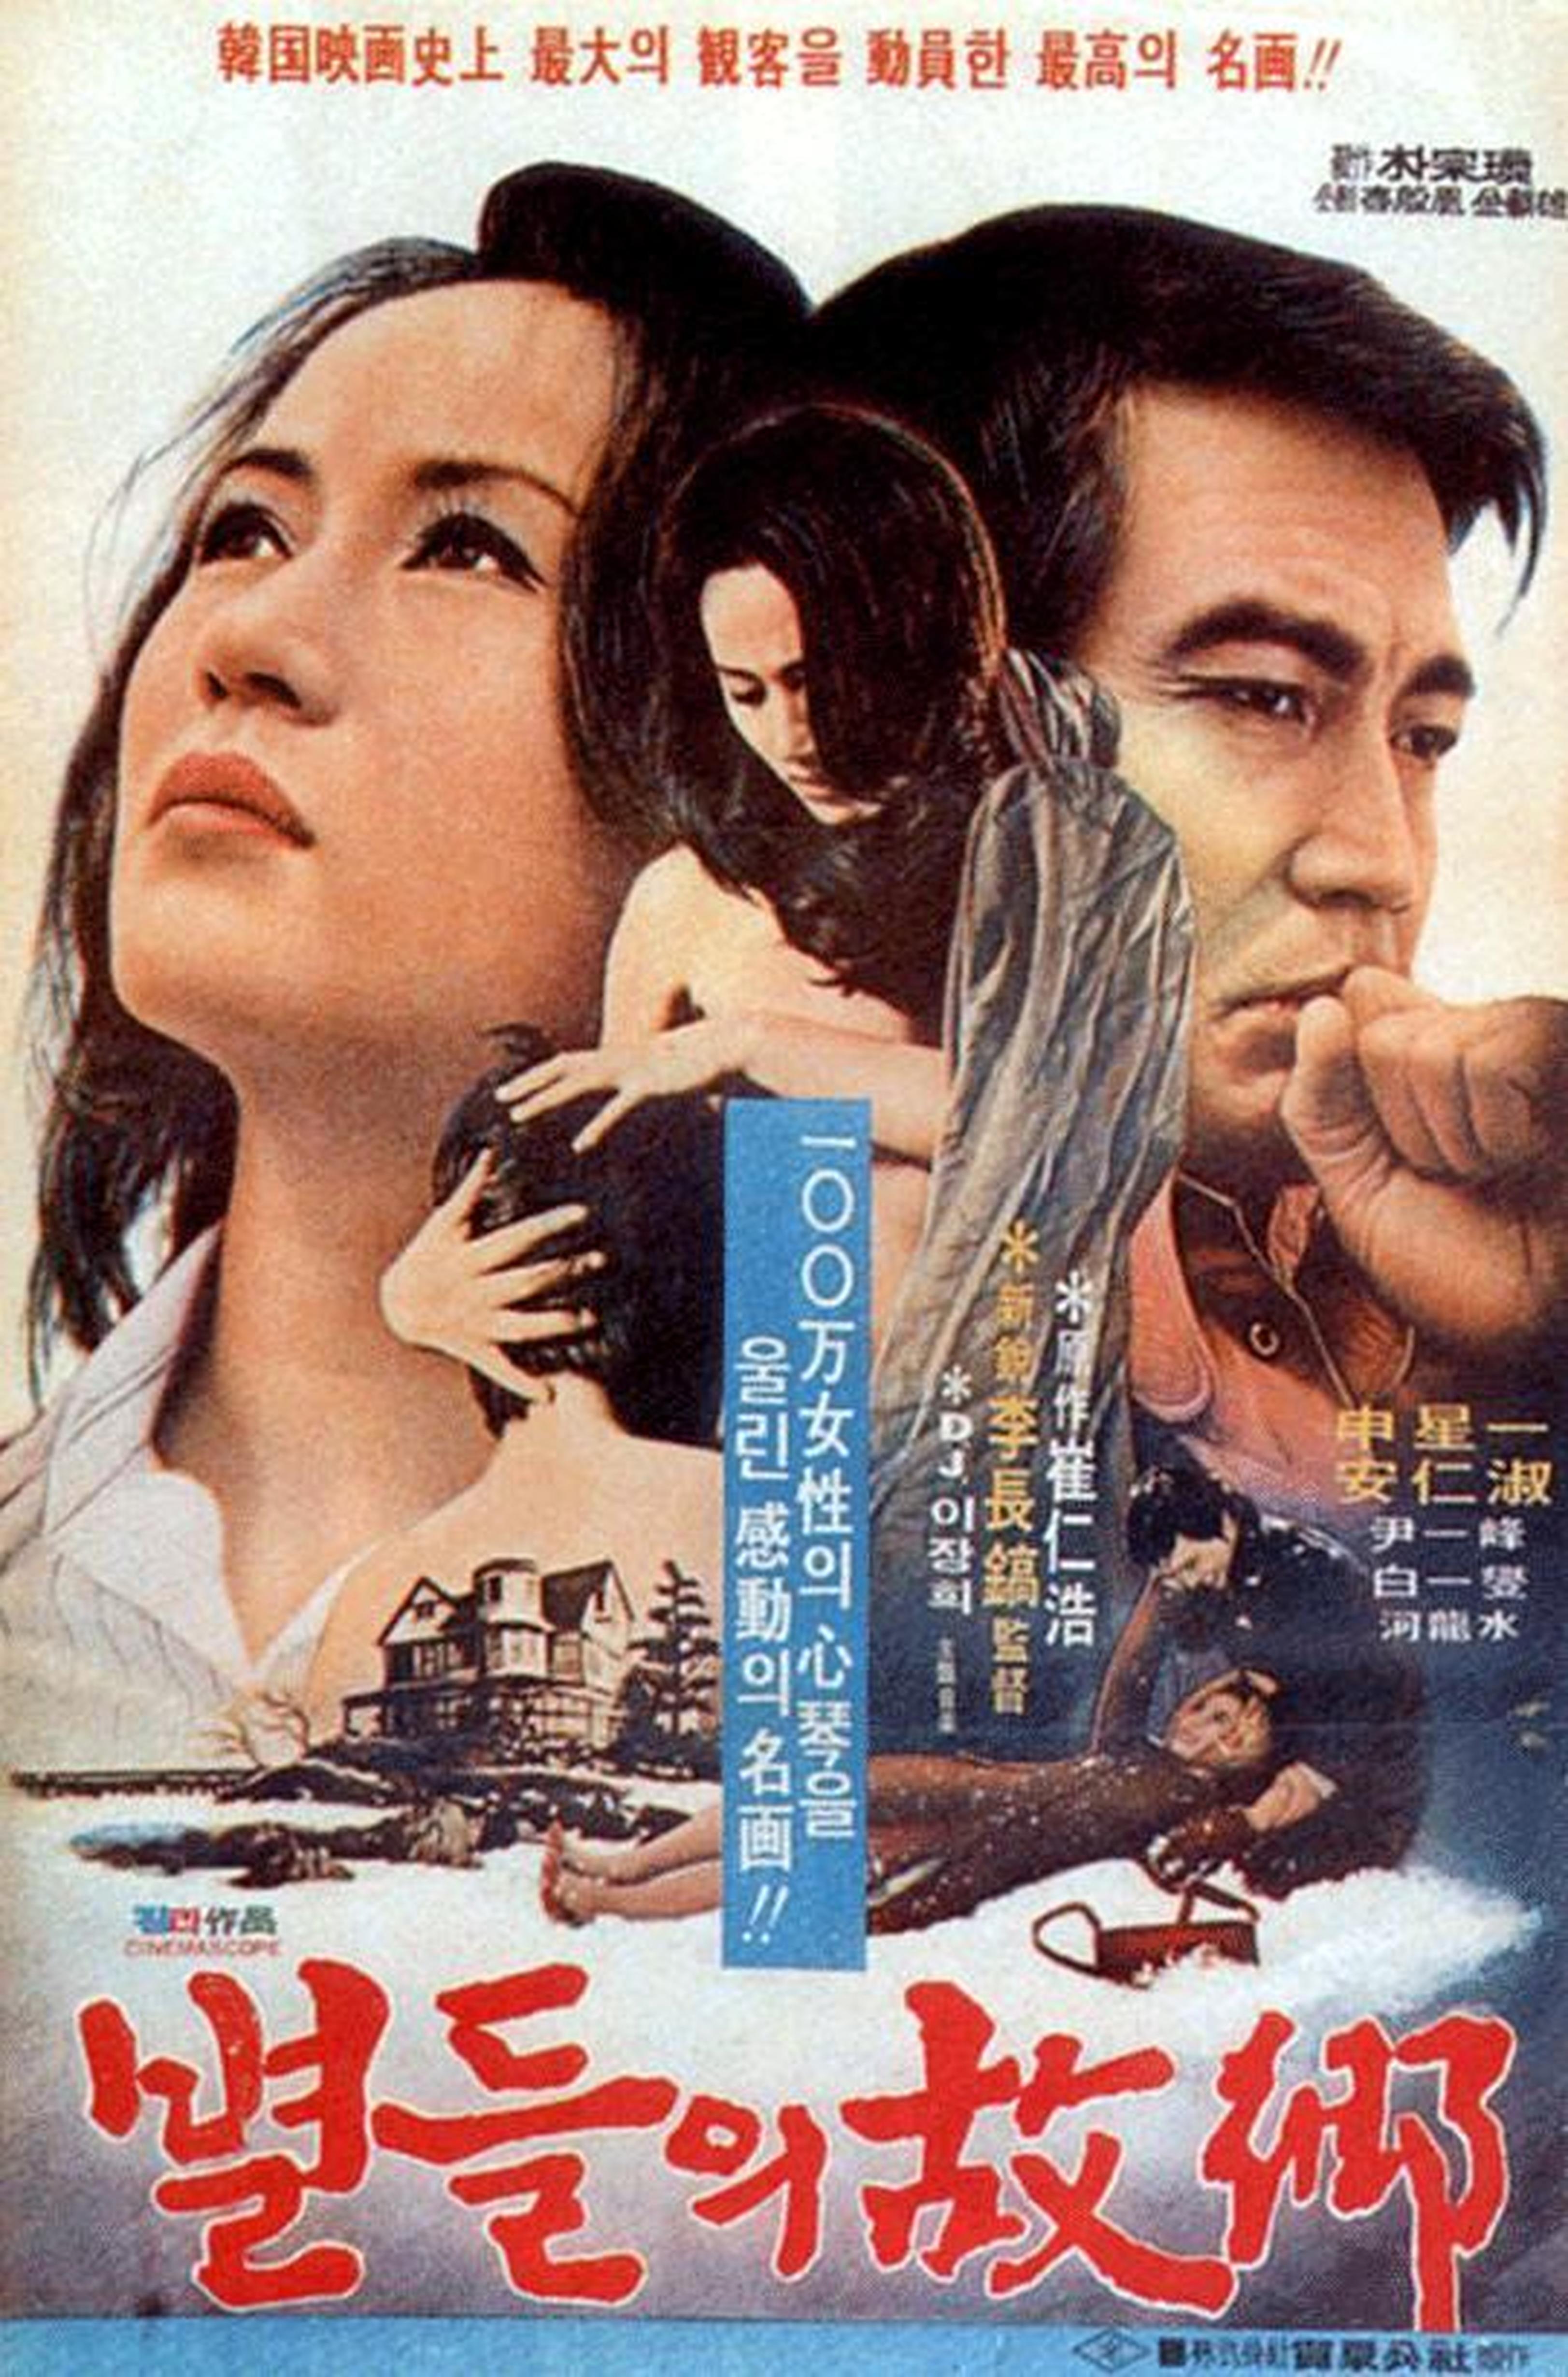 【1970-1980】《星星的故乡》 (1974)导演李长镐。电影带着批判地态度眺望了在男性暴力、父权家长制支配的思想体系下，近代化的过程中被牺牲的年轻女性们。